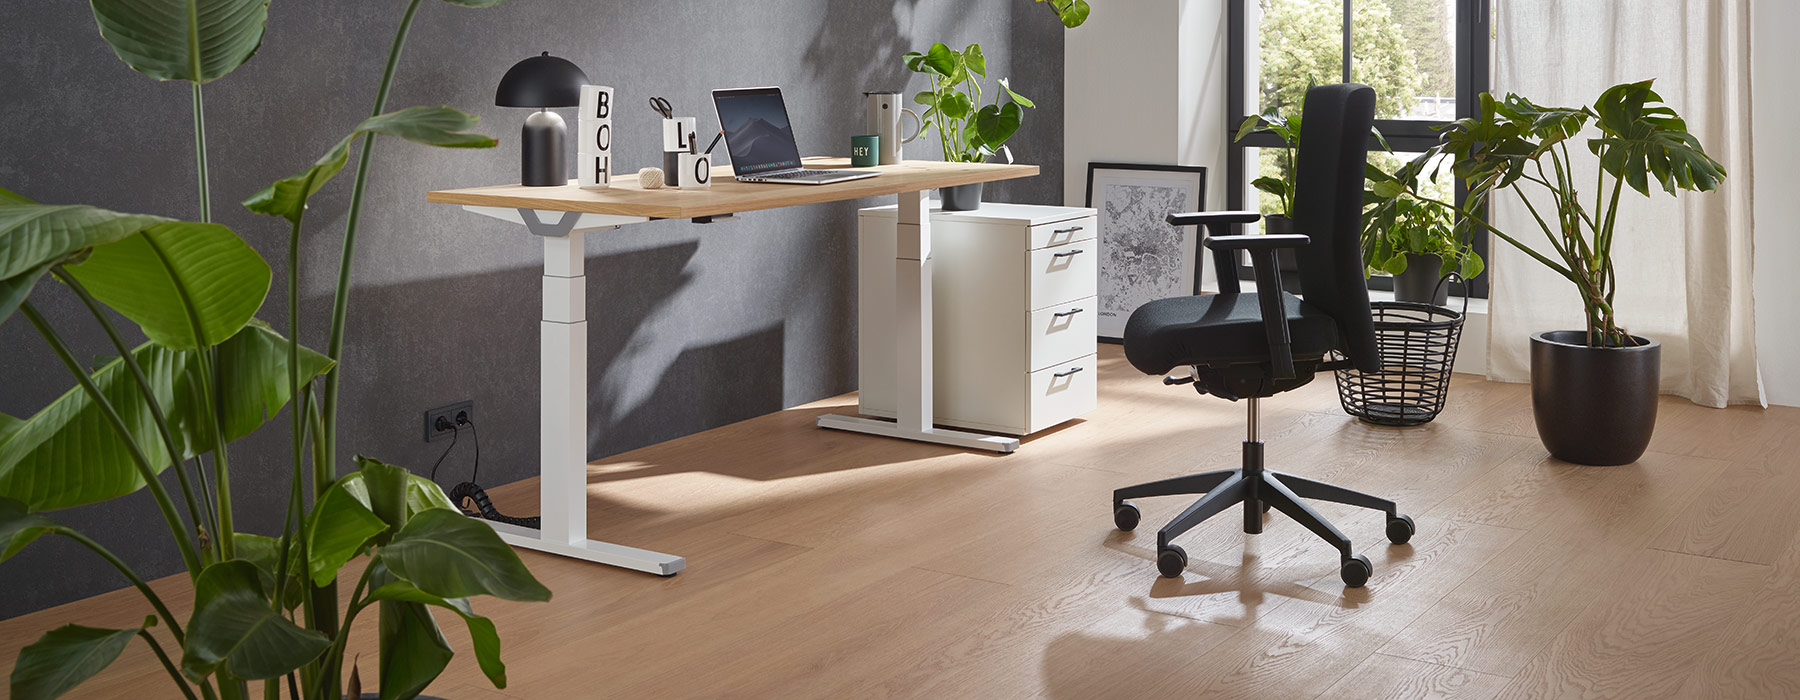 Ein Bürostuhl ist wichtiger Bestandteil eines modernen Büros